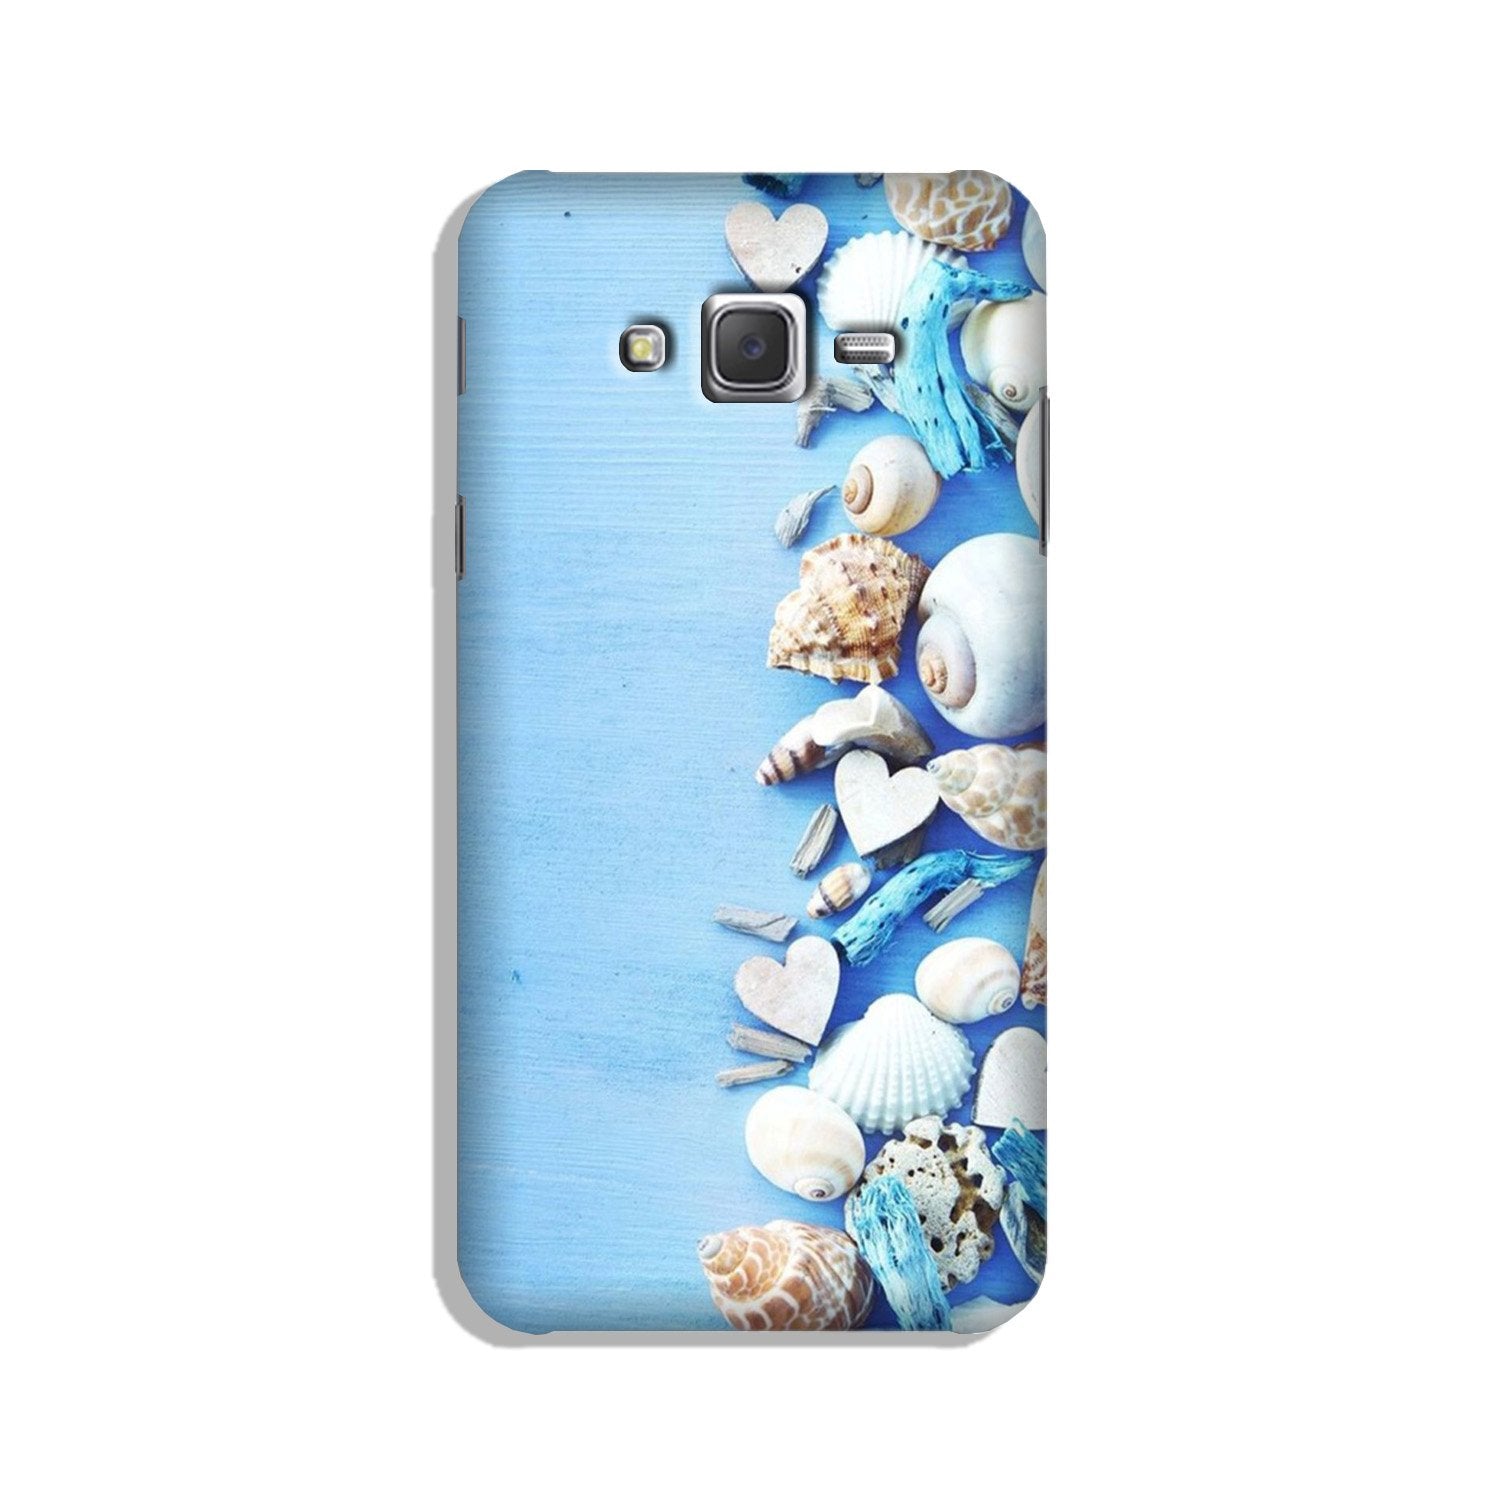 Sea Shells2 Case for Galaxy J2 (2015)